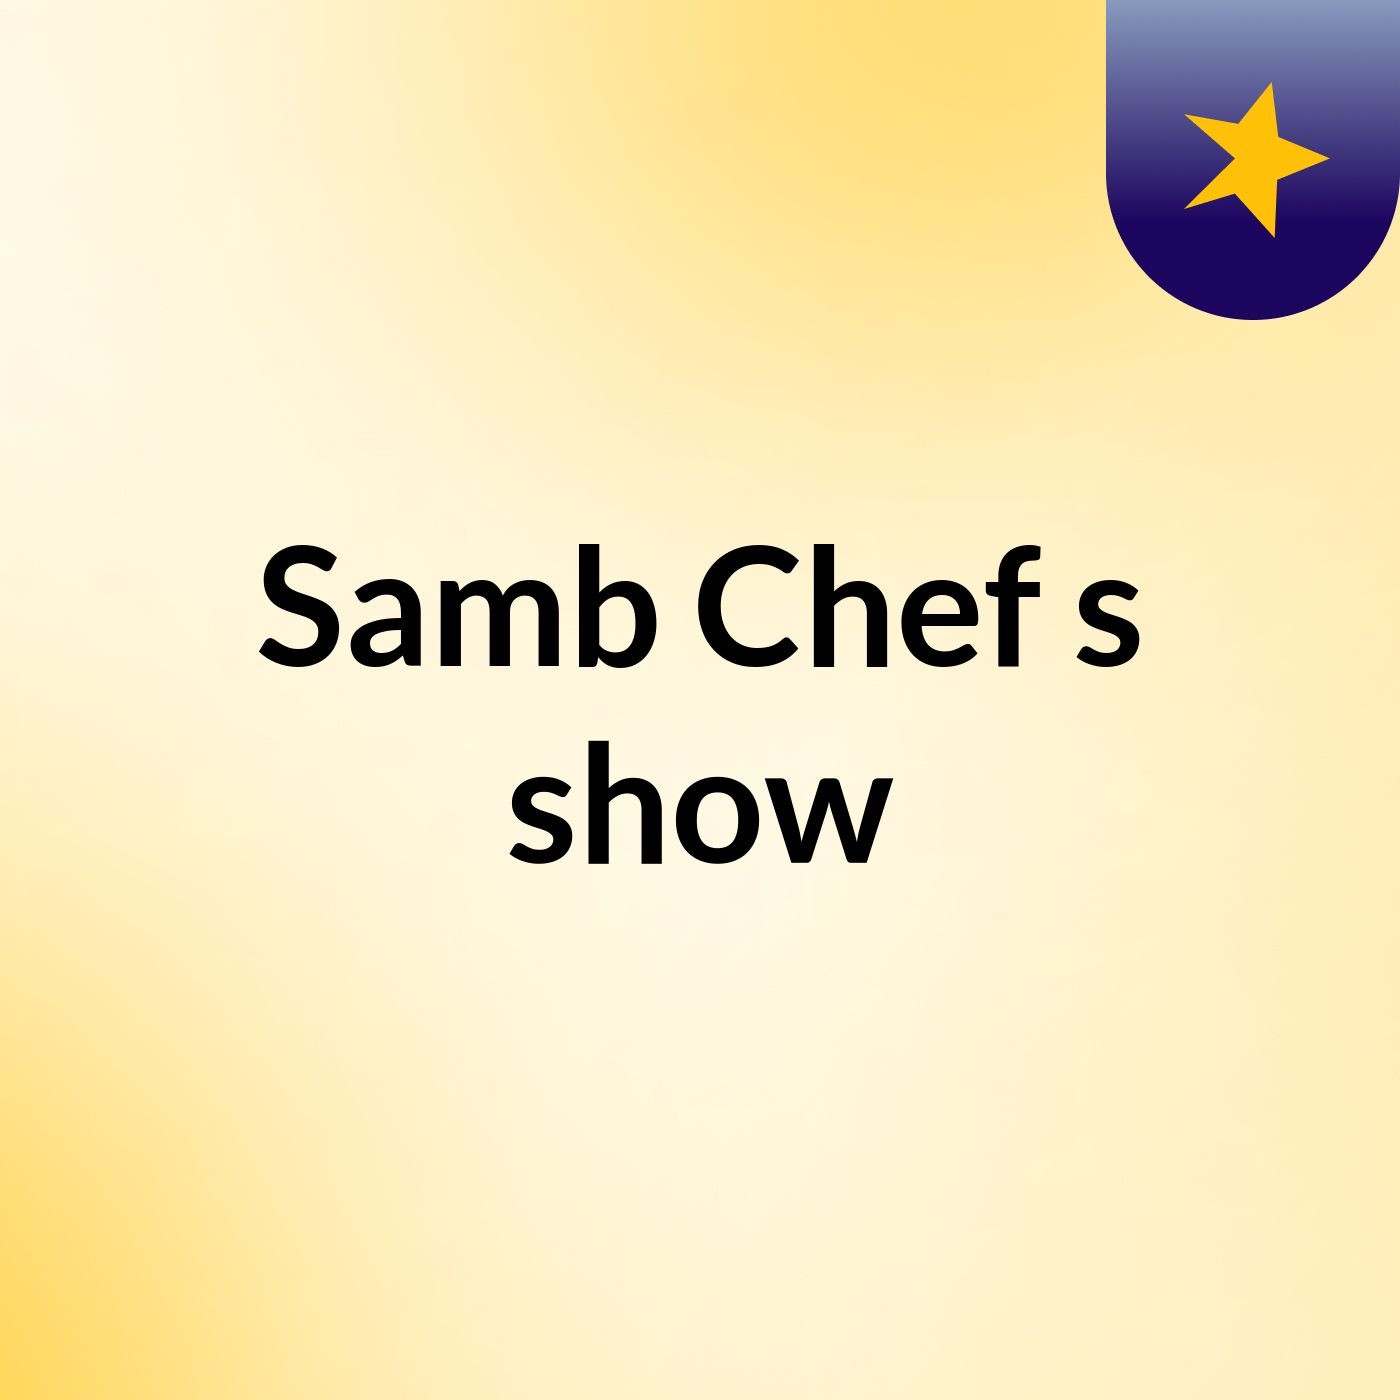 Samb Chef's show